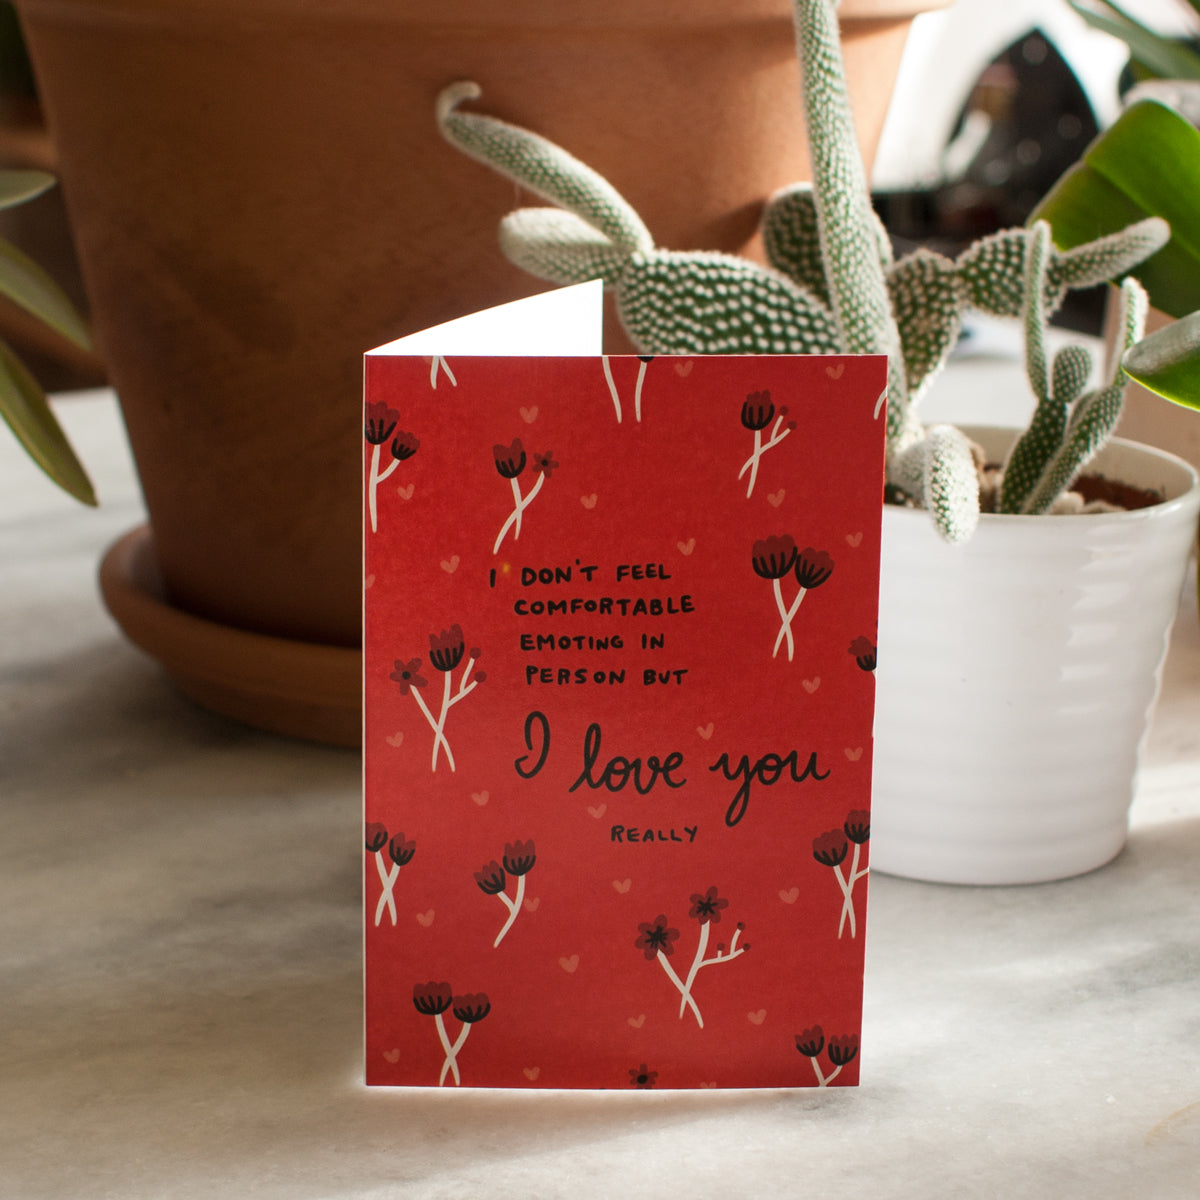 I Love You (really) card